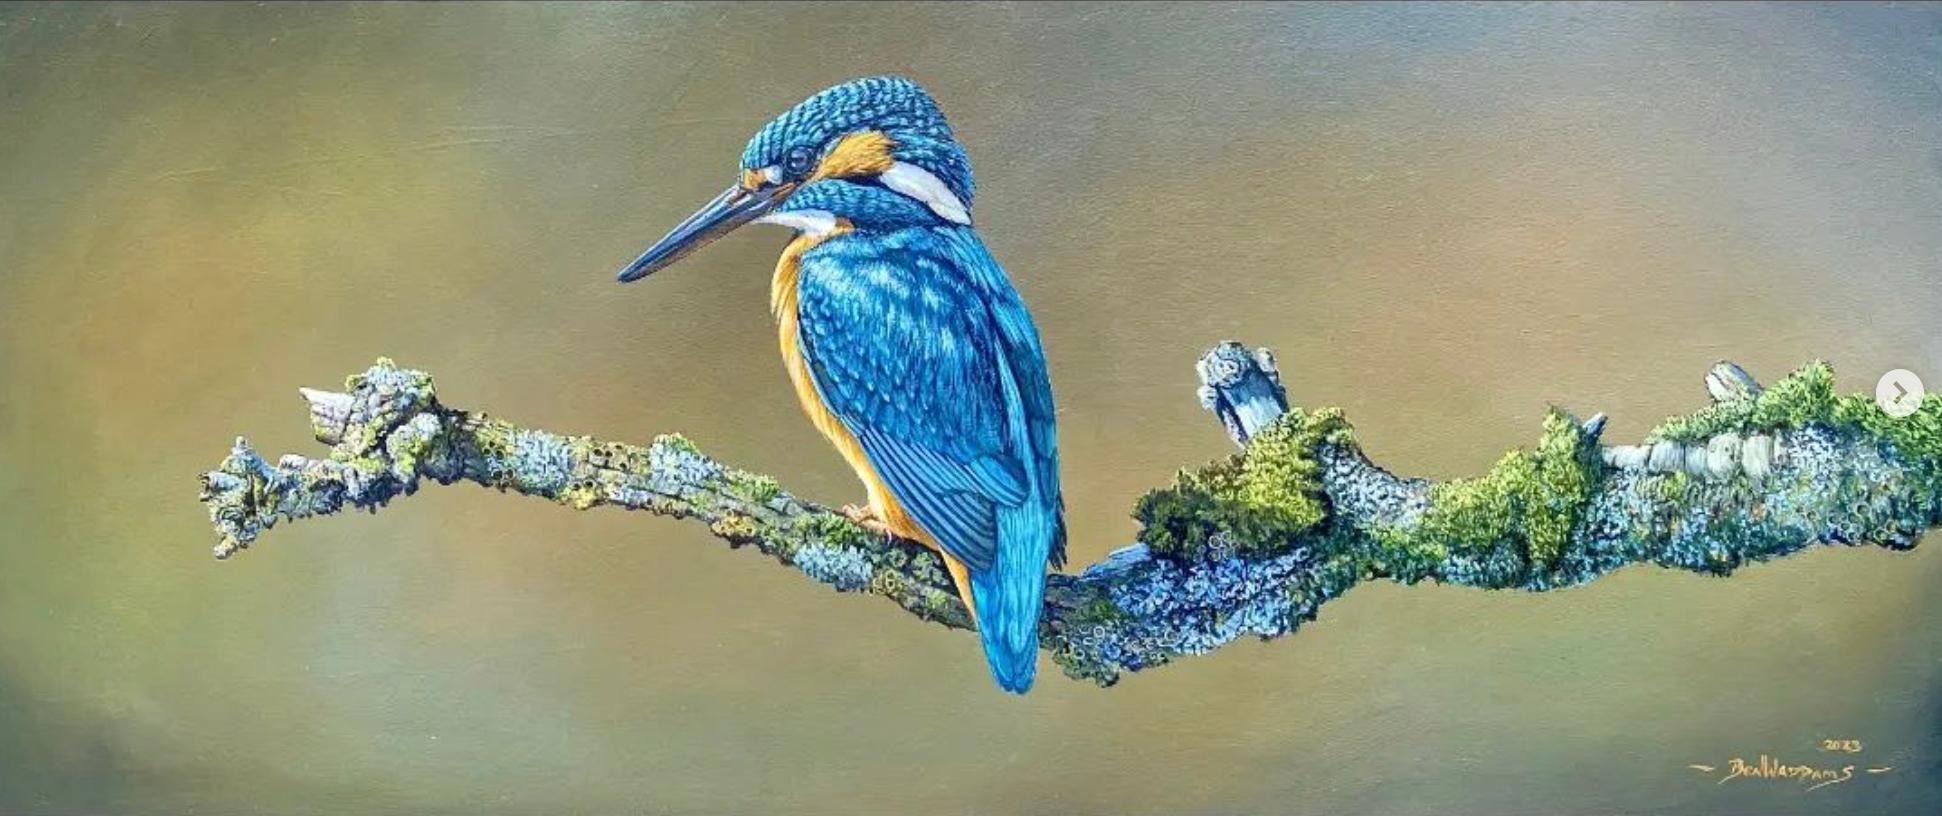 Ben Waddams Animal Painting – A Moment rest' Fotorealistisches Gemälde eines Kingfishers in freier Wildbahn, blau, orange